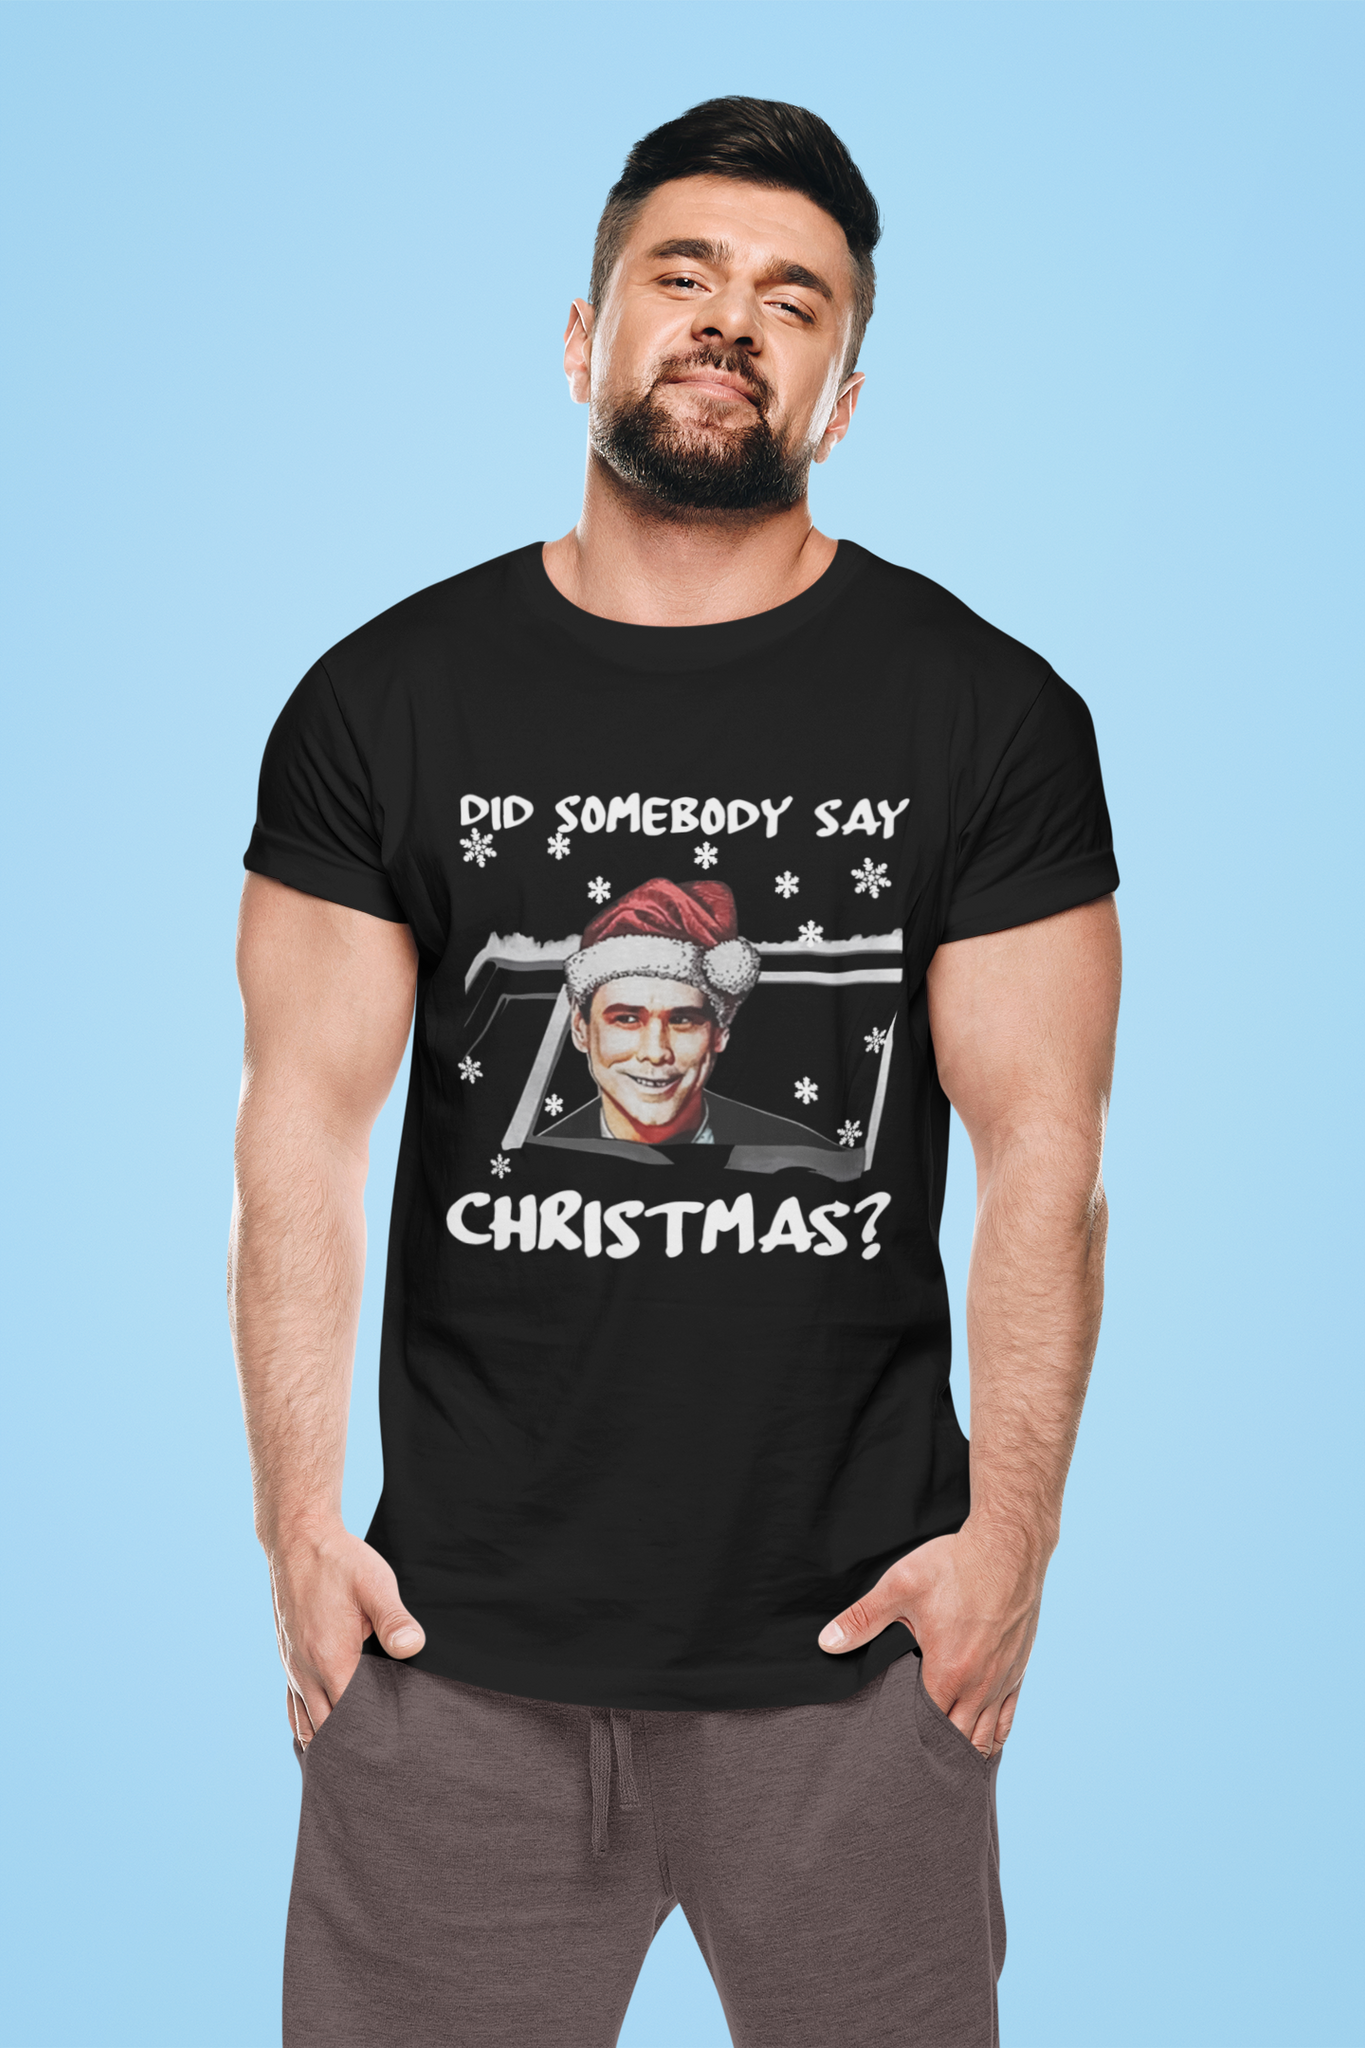 Dumb And Dumber T Shirt, Lloyd Christmas T Shirt, Did Somebody Say Christmas Tshirt, Christmas Gifts